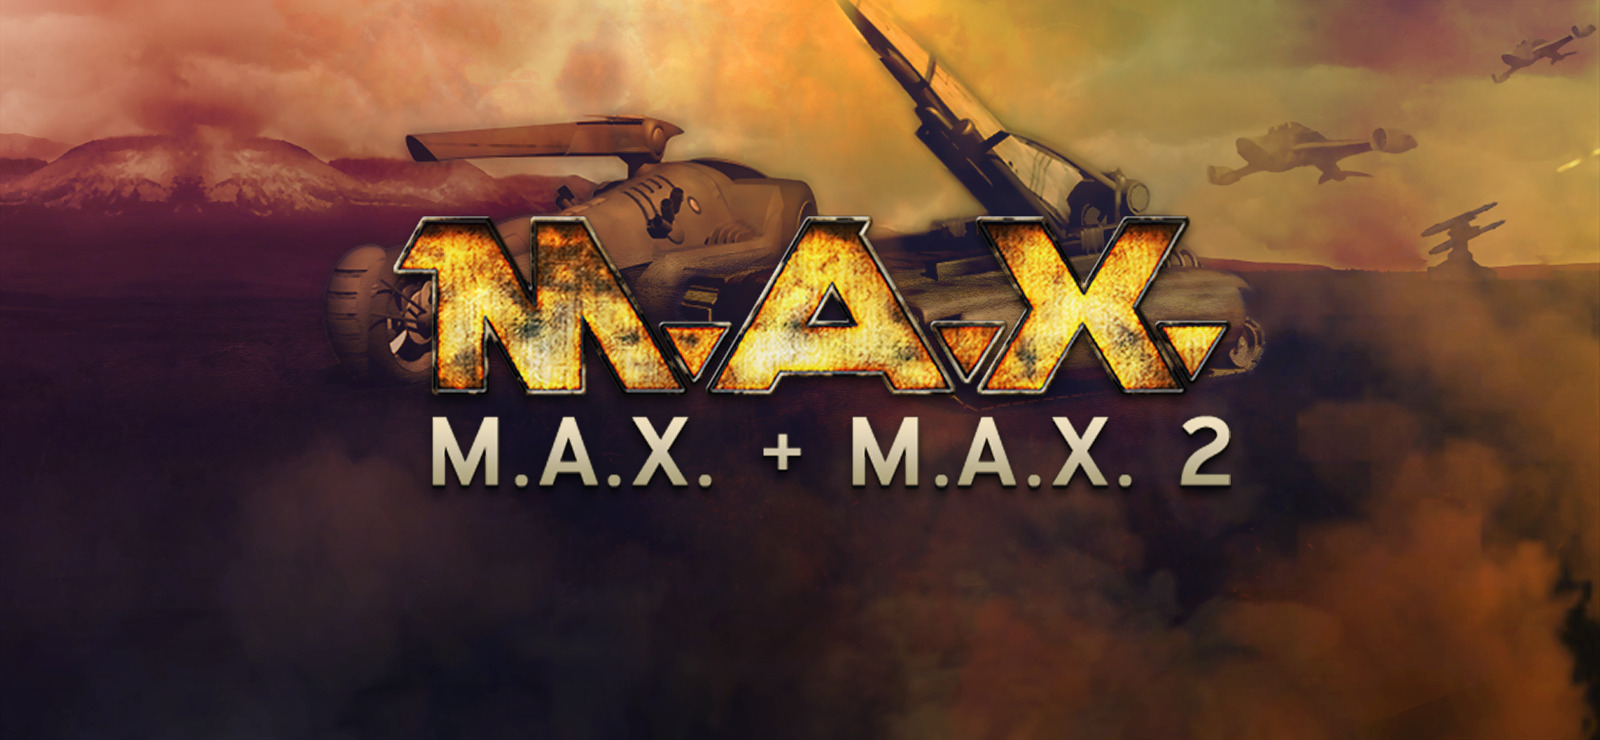 M.A.X.: Mechanized Assault & Exploration 